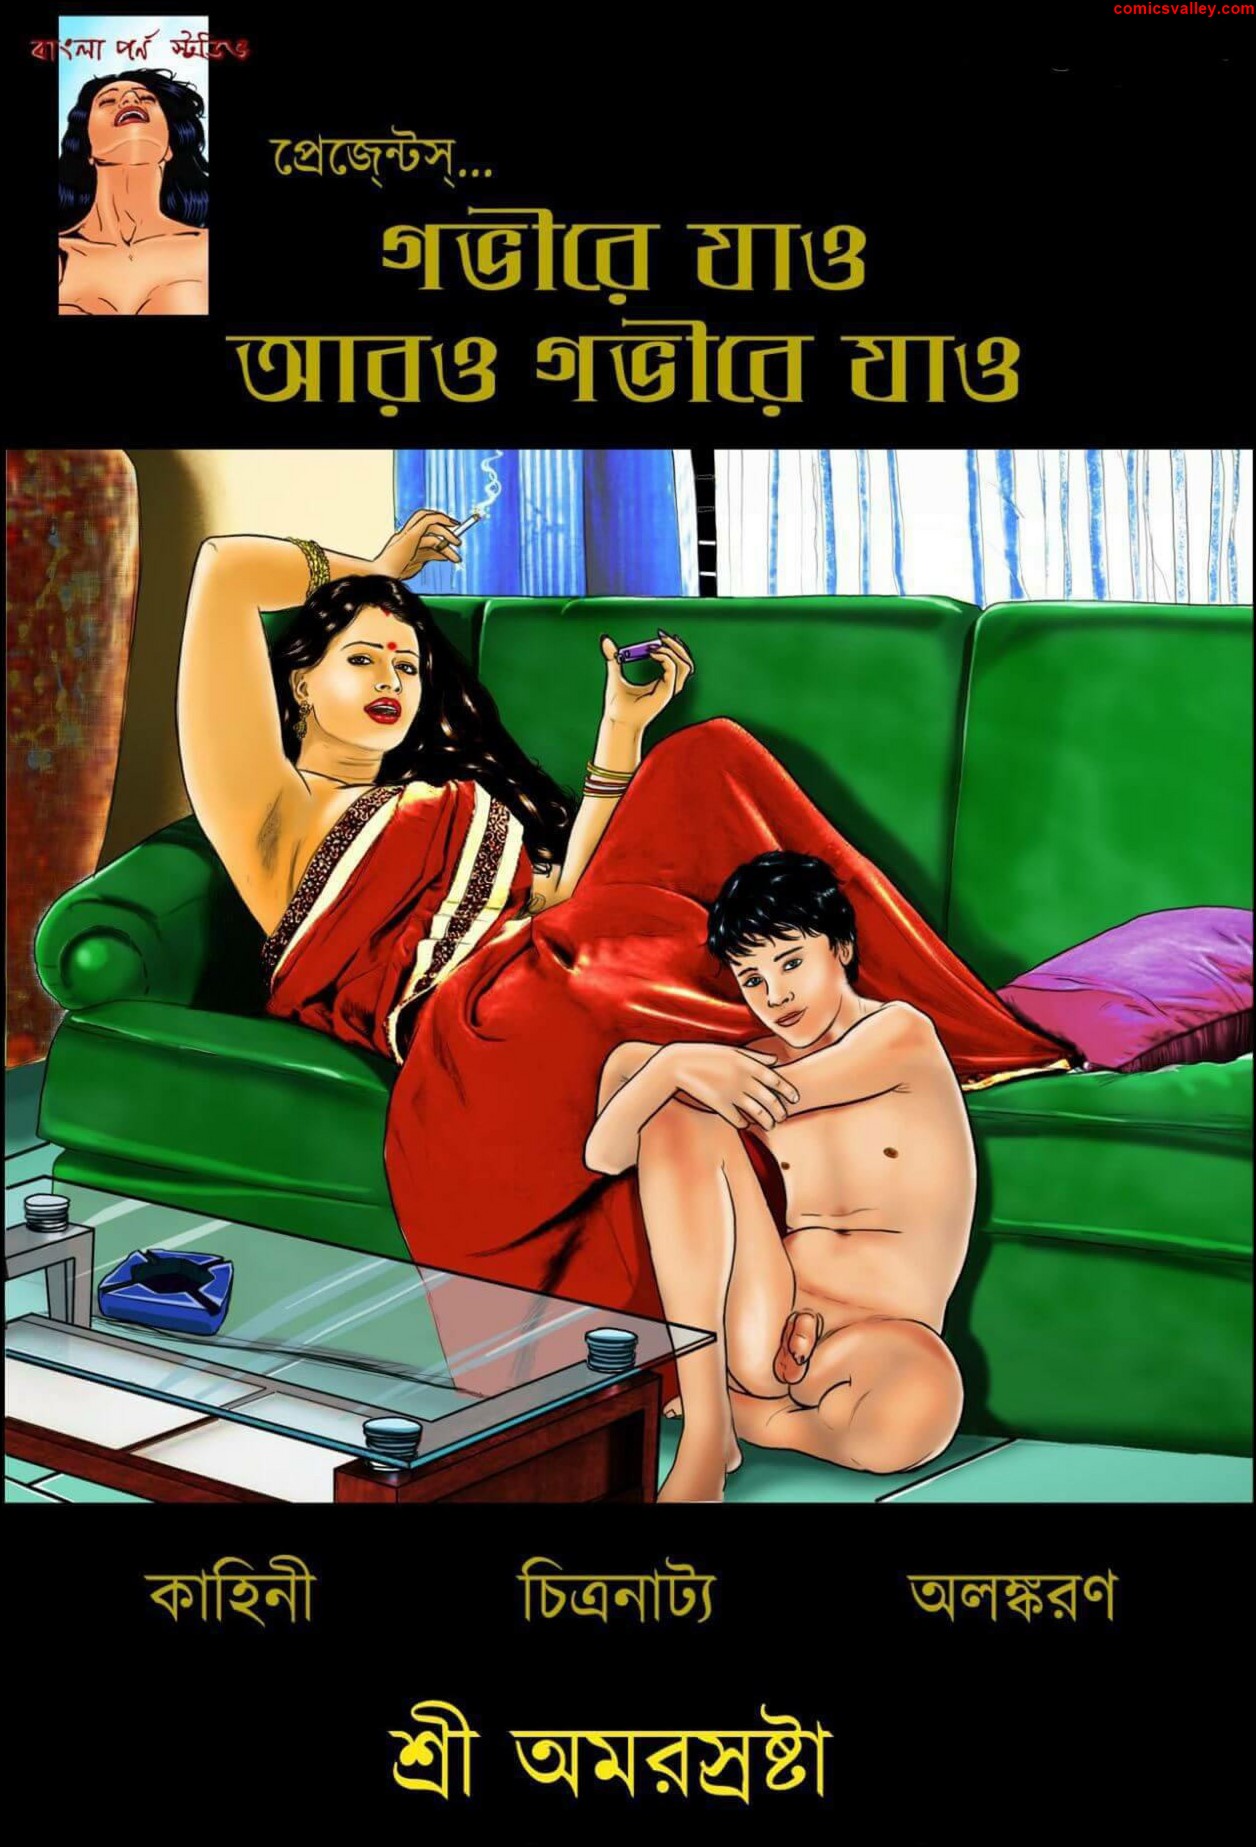 Bengali comics porn